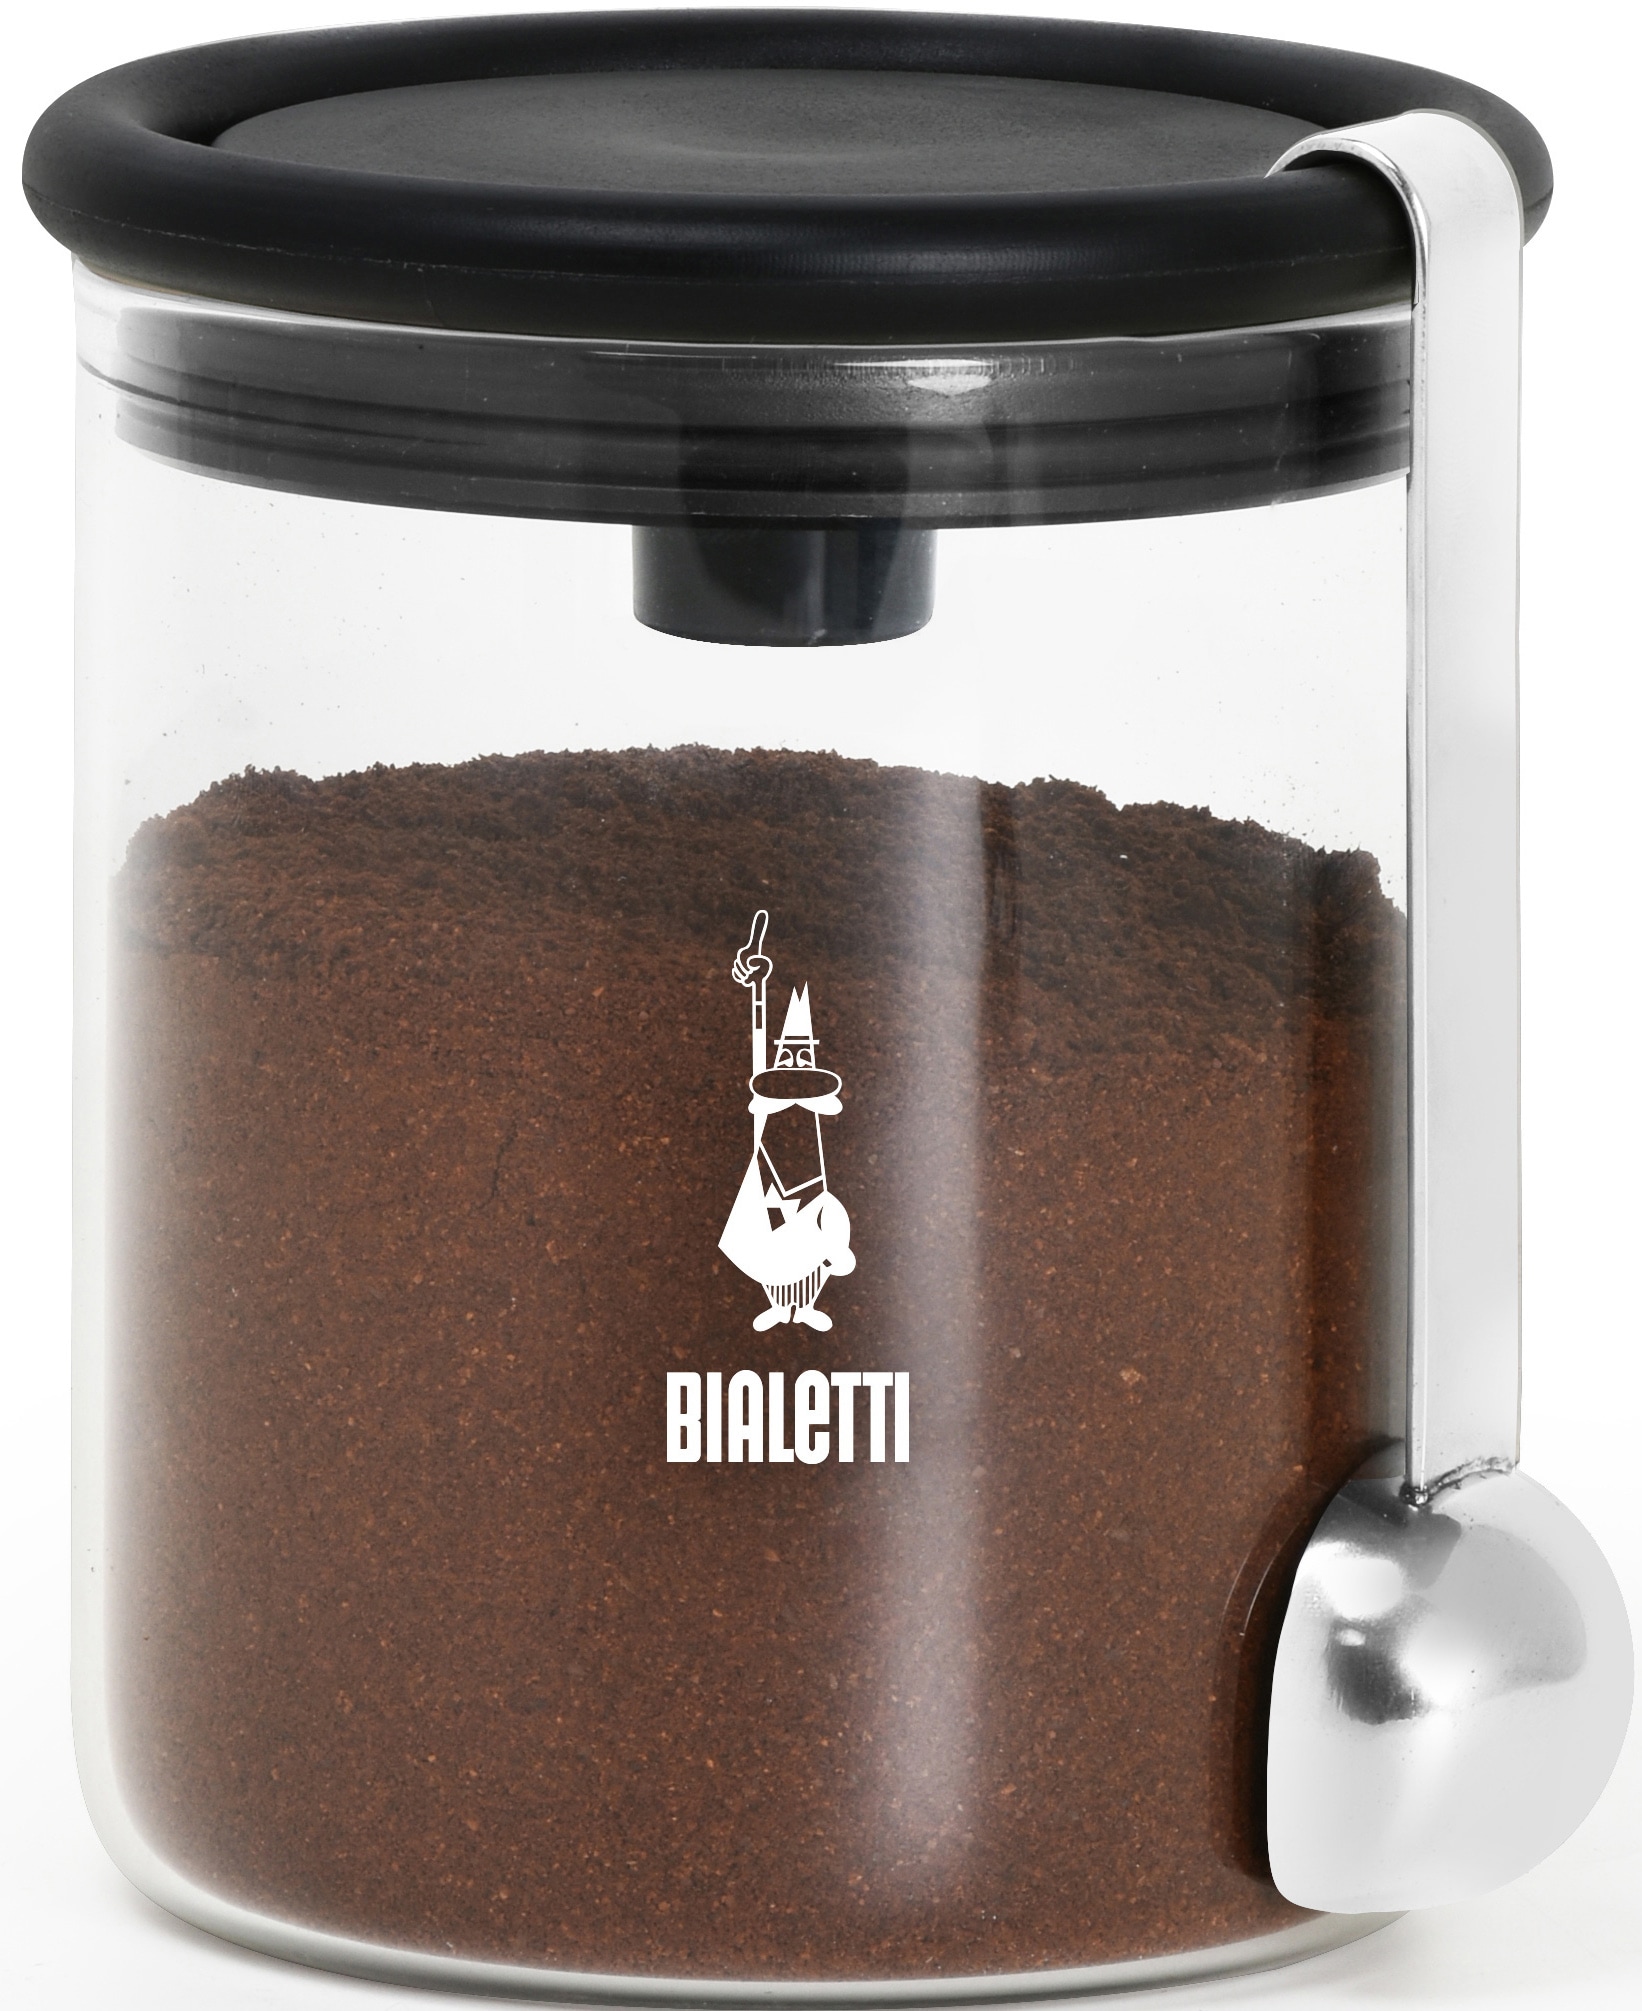 BIALETTI Kaffeedose, (2 tlg.), für Kaffee, Inhalt: 250 g schwarz Kaffeedose Zubehör Kaffeemaschinen Kaffee Espresso Haushaltsgeräte